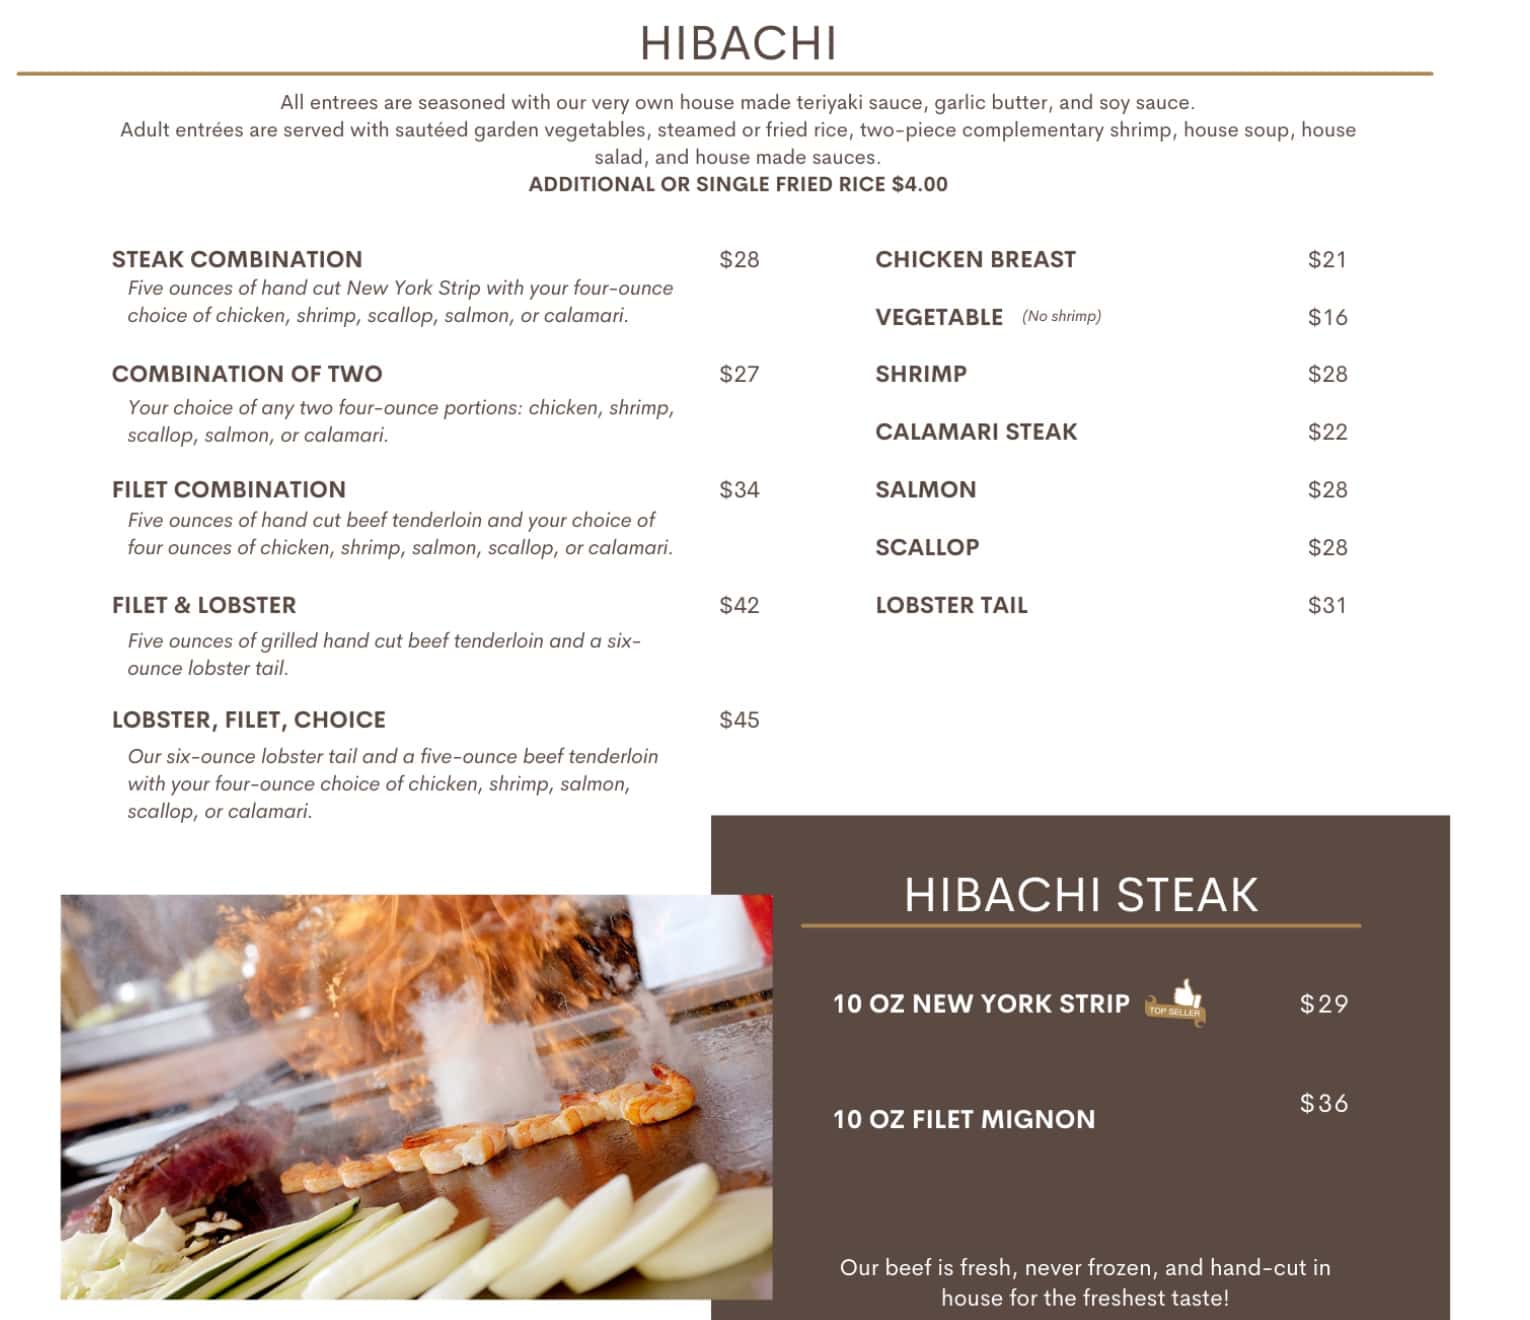 Shogun Japanese Steak House Hibachi Menu